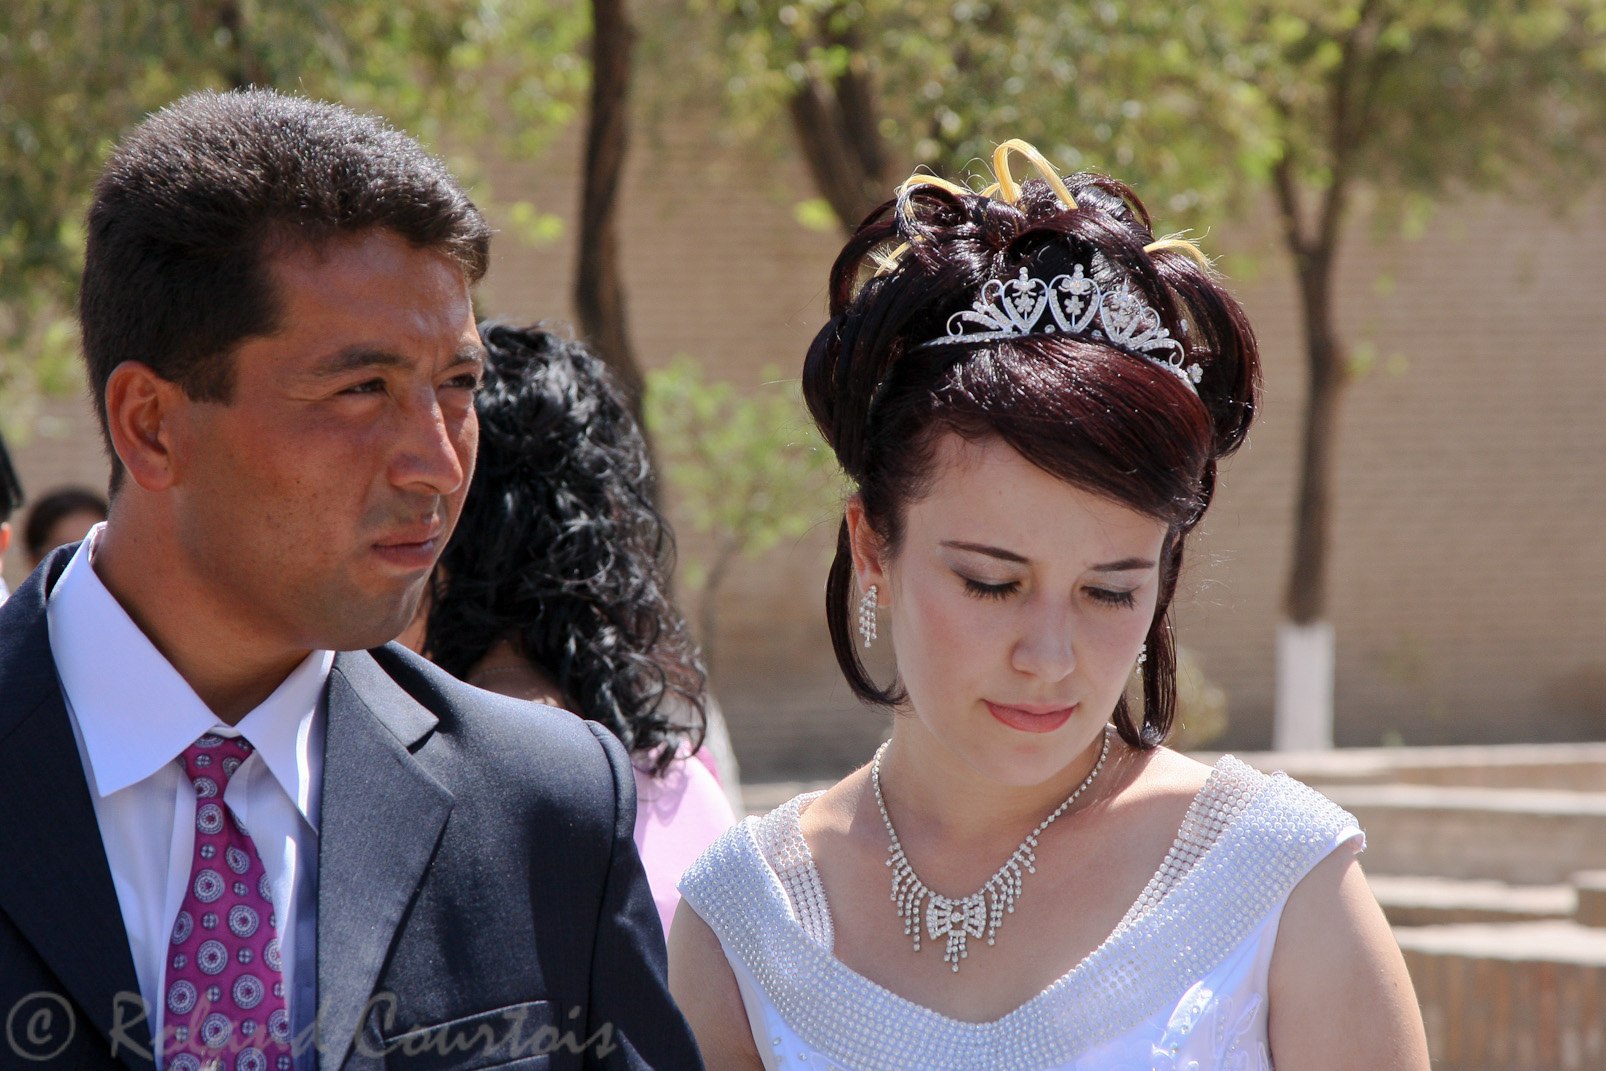 Avant la cérémonie, la future mariée avance les yeux à terre, car elle va perdre ses amies et sa famille.